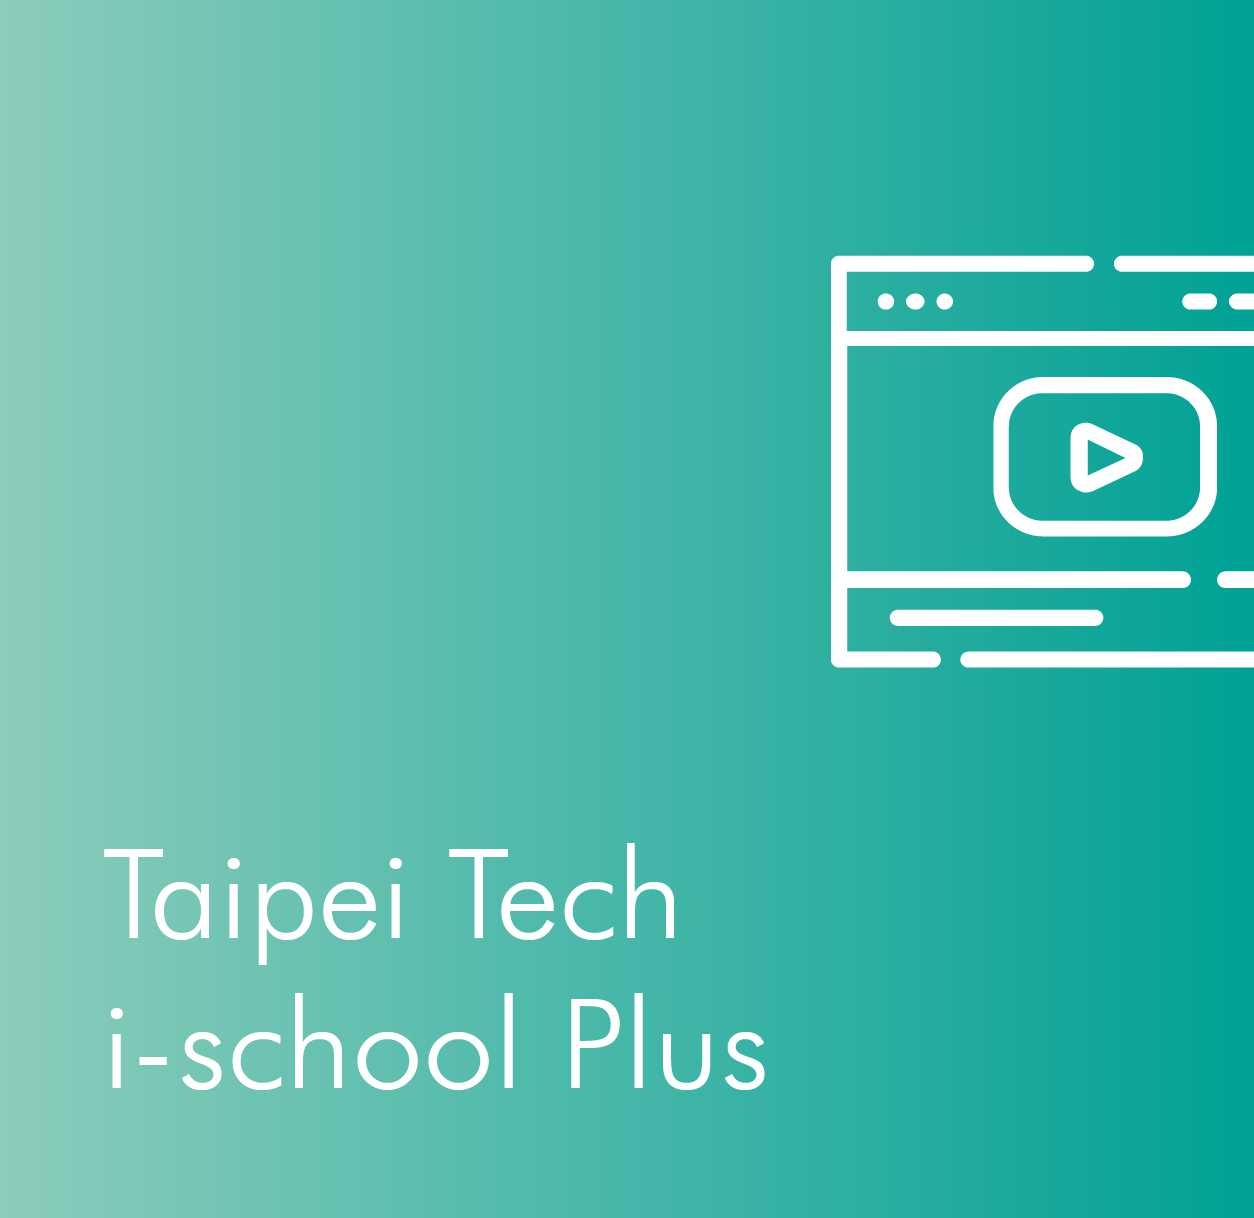 Taipei Tech i-school Plus